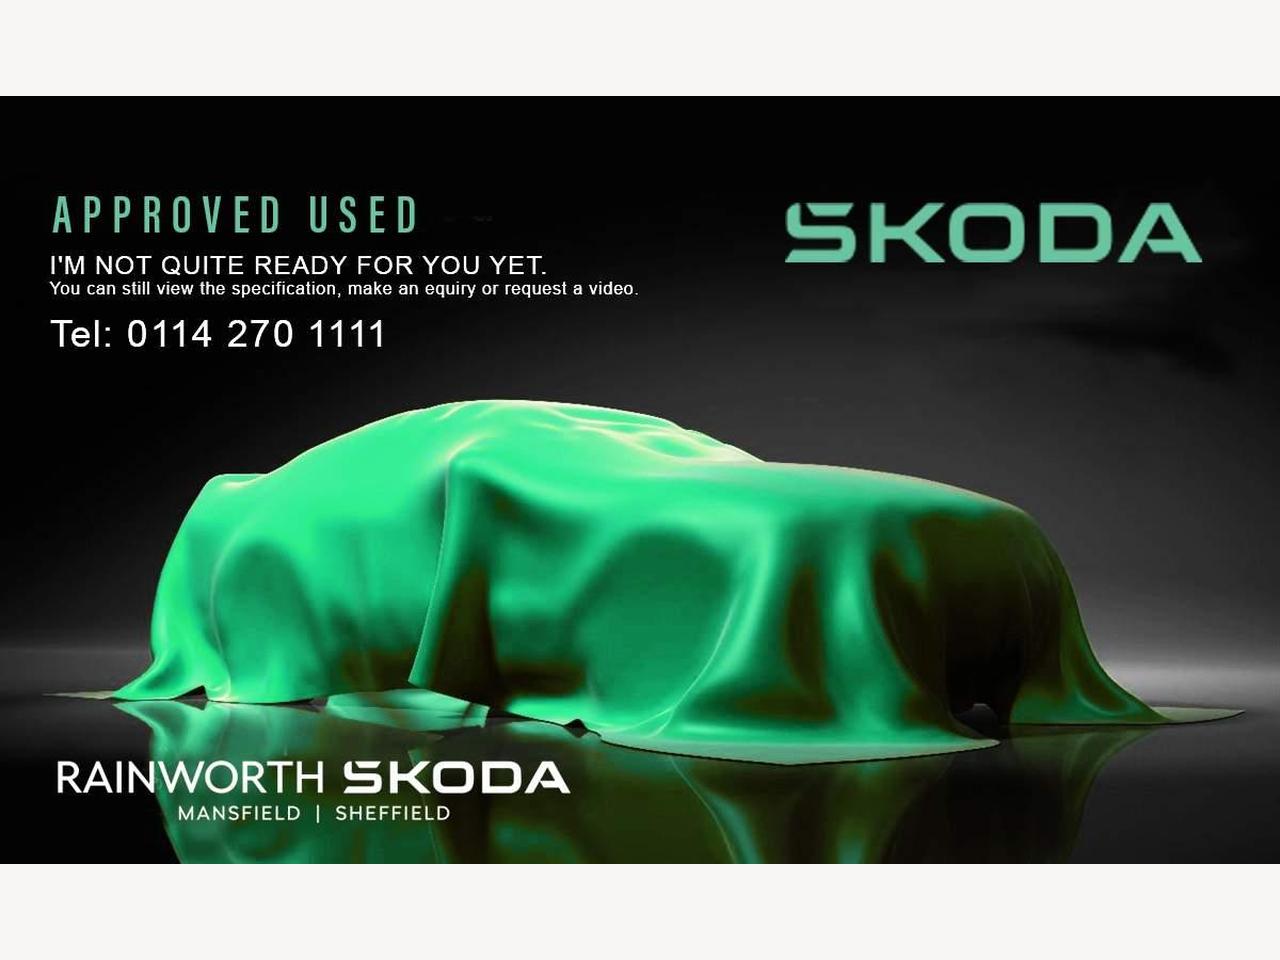 Skoda Kodiaq 2.0 TSI (244ps) 4X4 vRS (7 seats) DSG